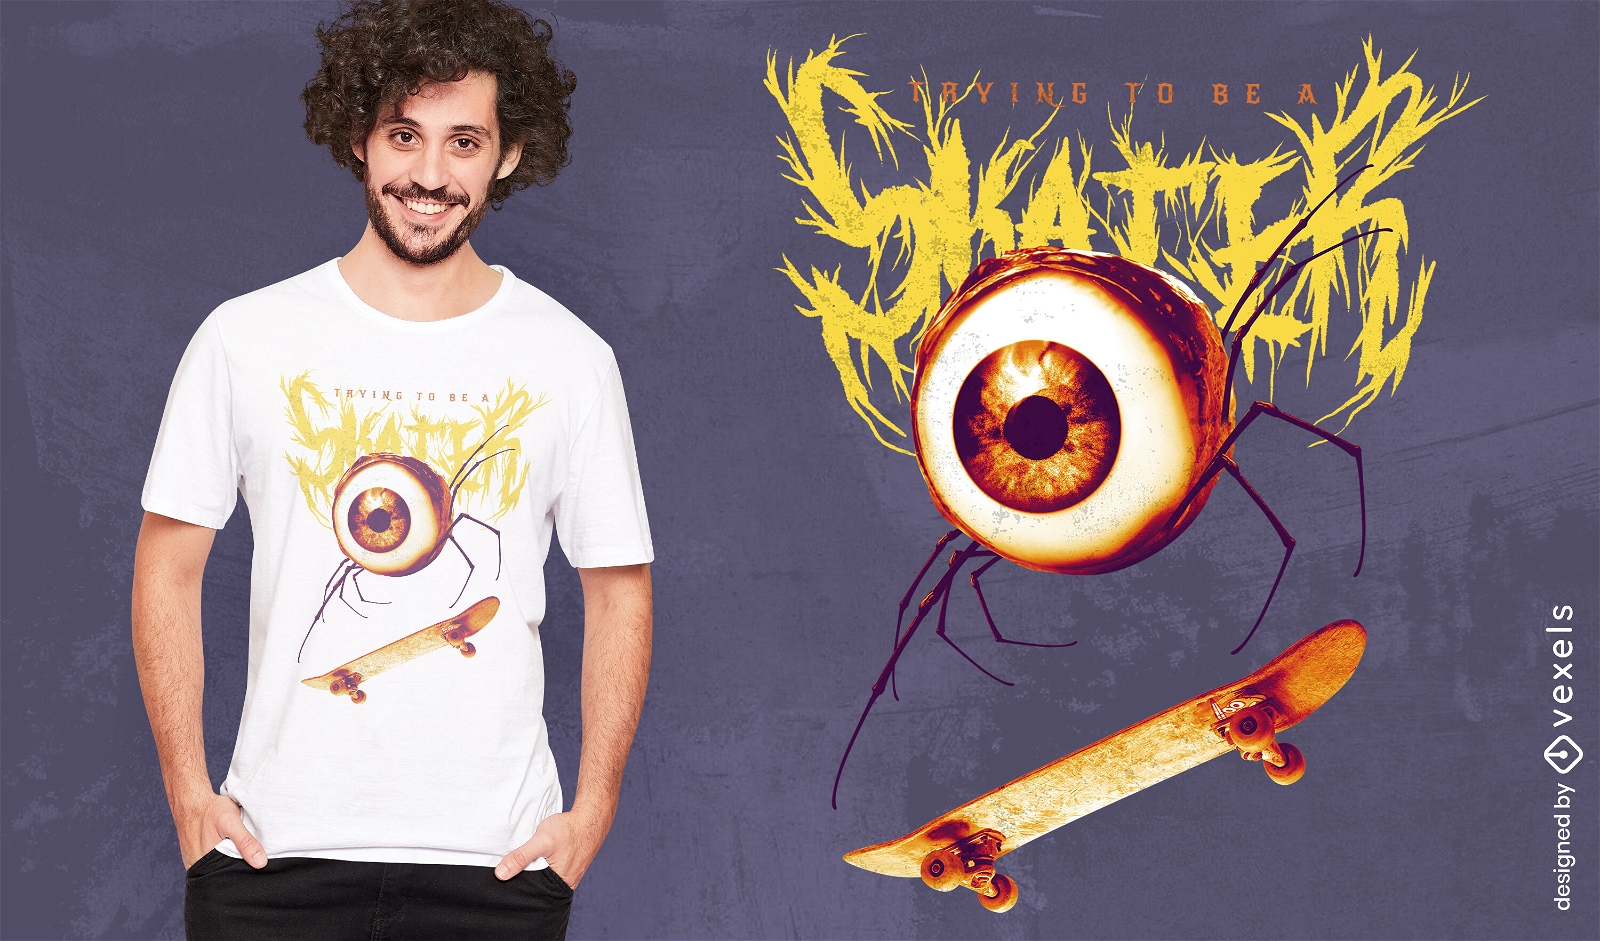 Eye in skateboard bizarre t-shirt design